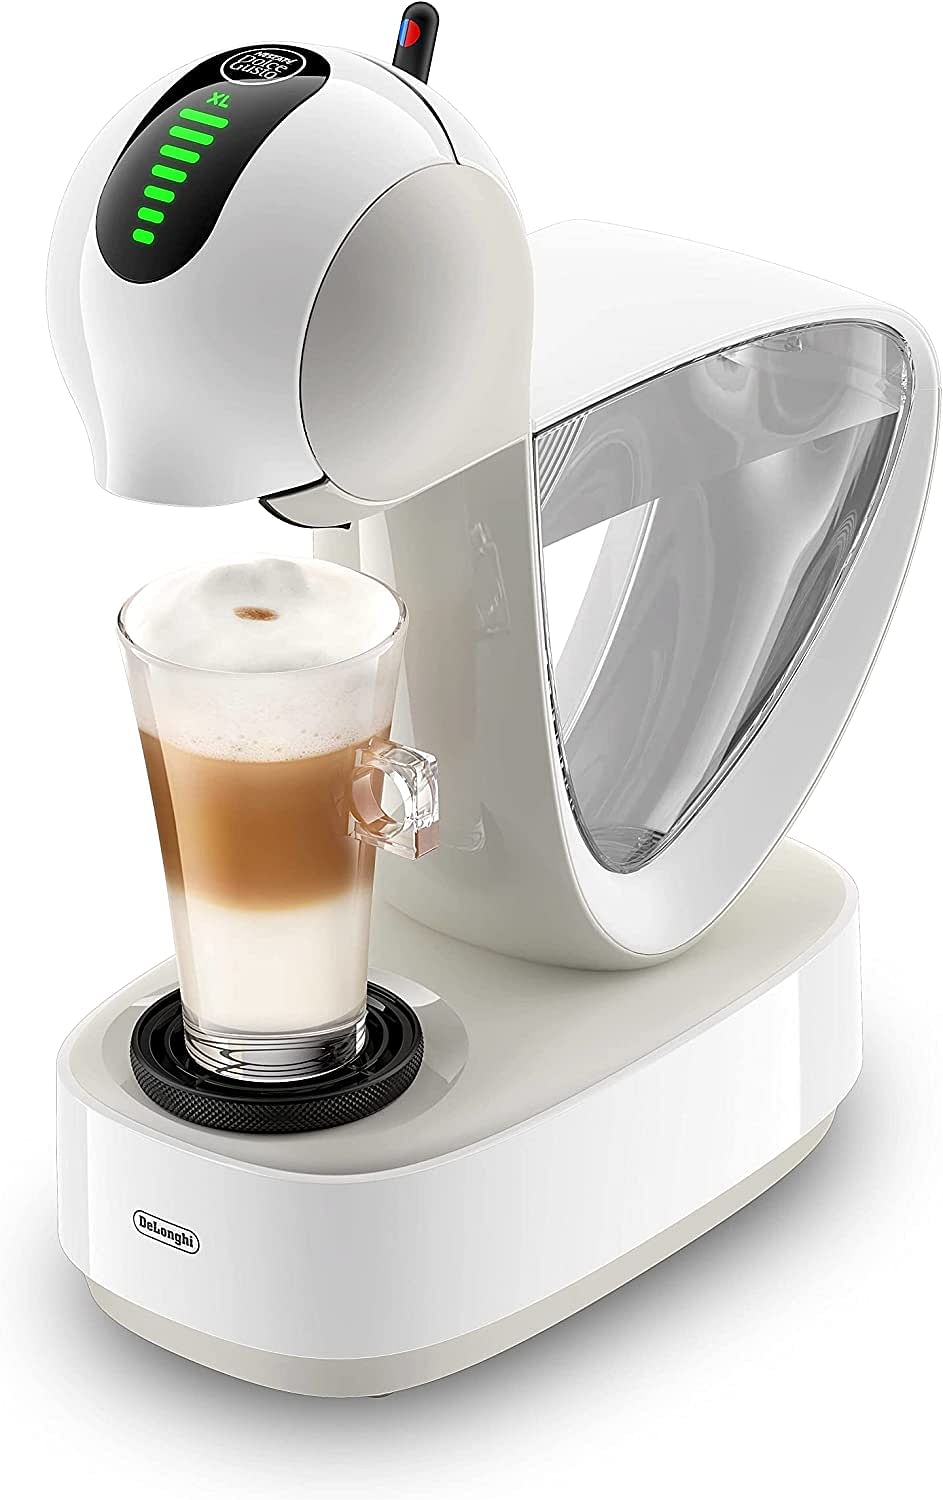 ماكينة تحضير القهوة انفنيست EDG268.W من نسكافية دولتشي غوستو، ماكينة تحضير القهوة مع كبسولات صغيرة ولمسة انفنيسما، لون ابيض